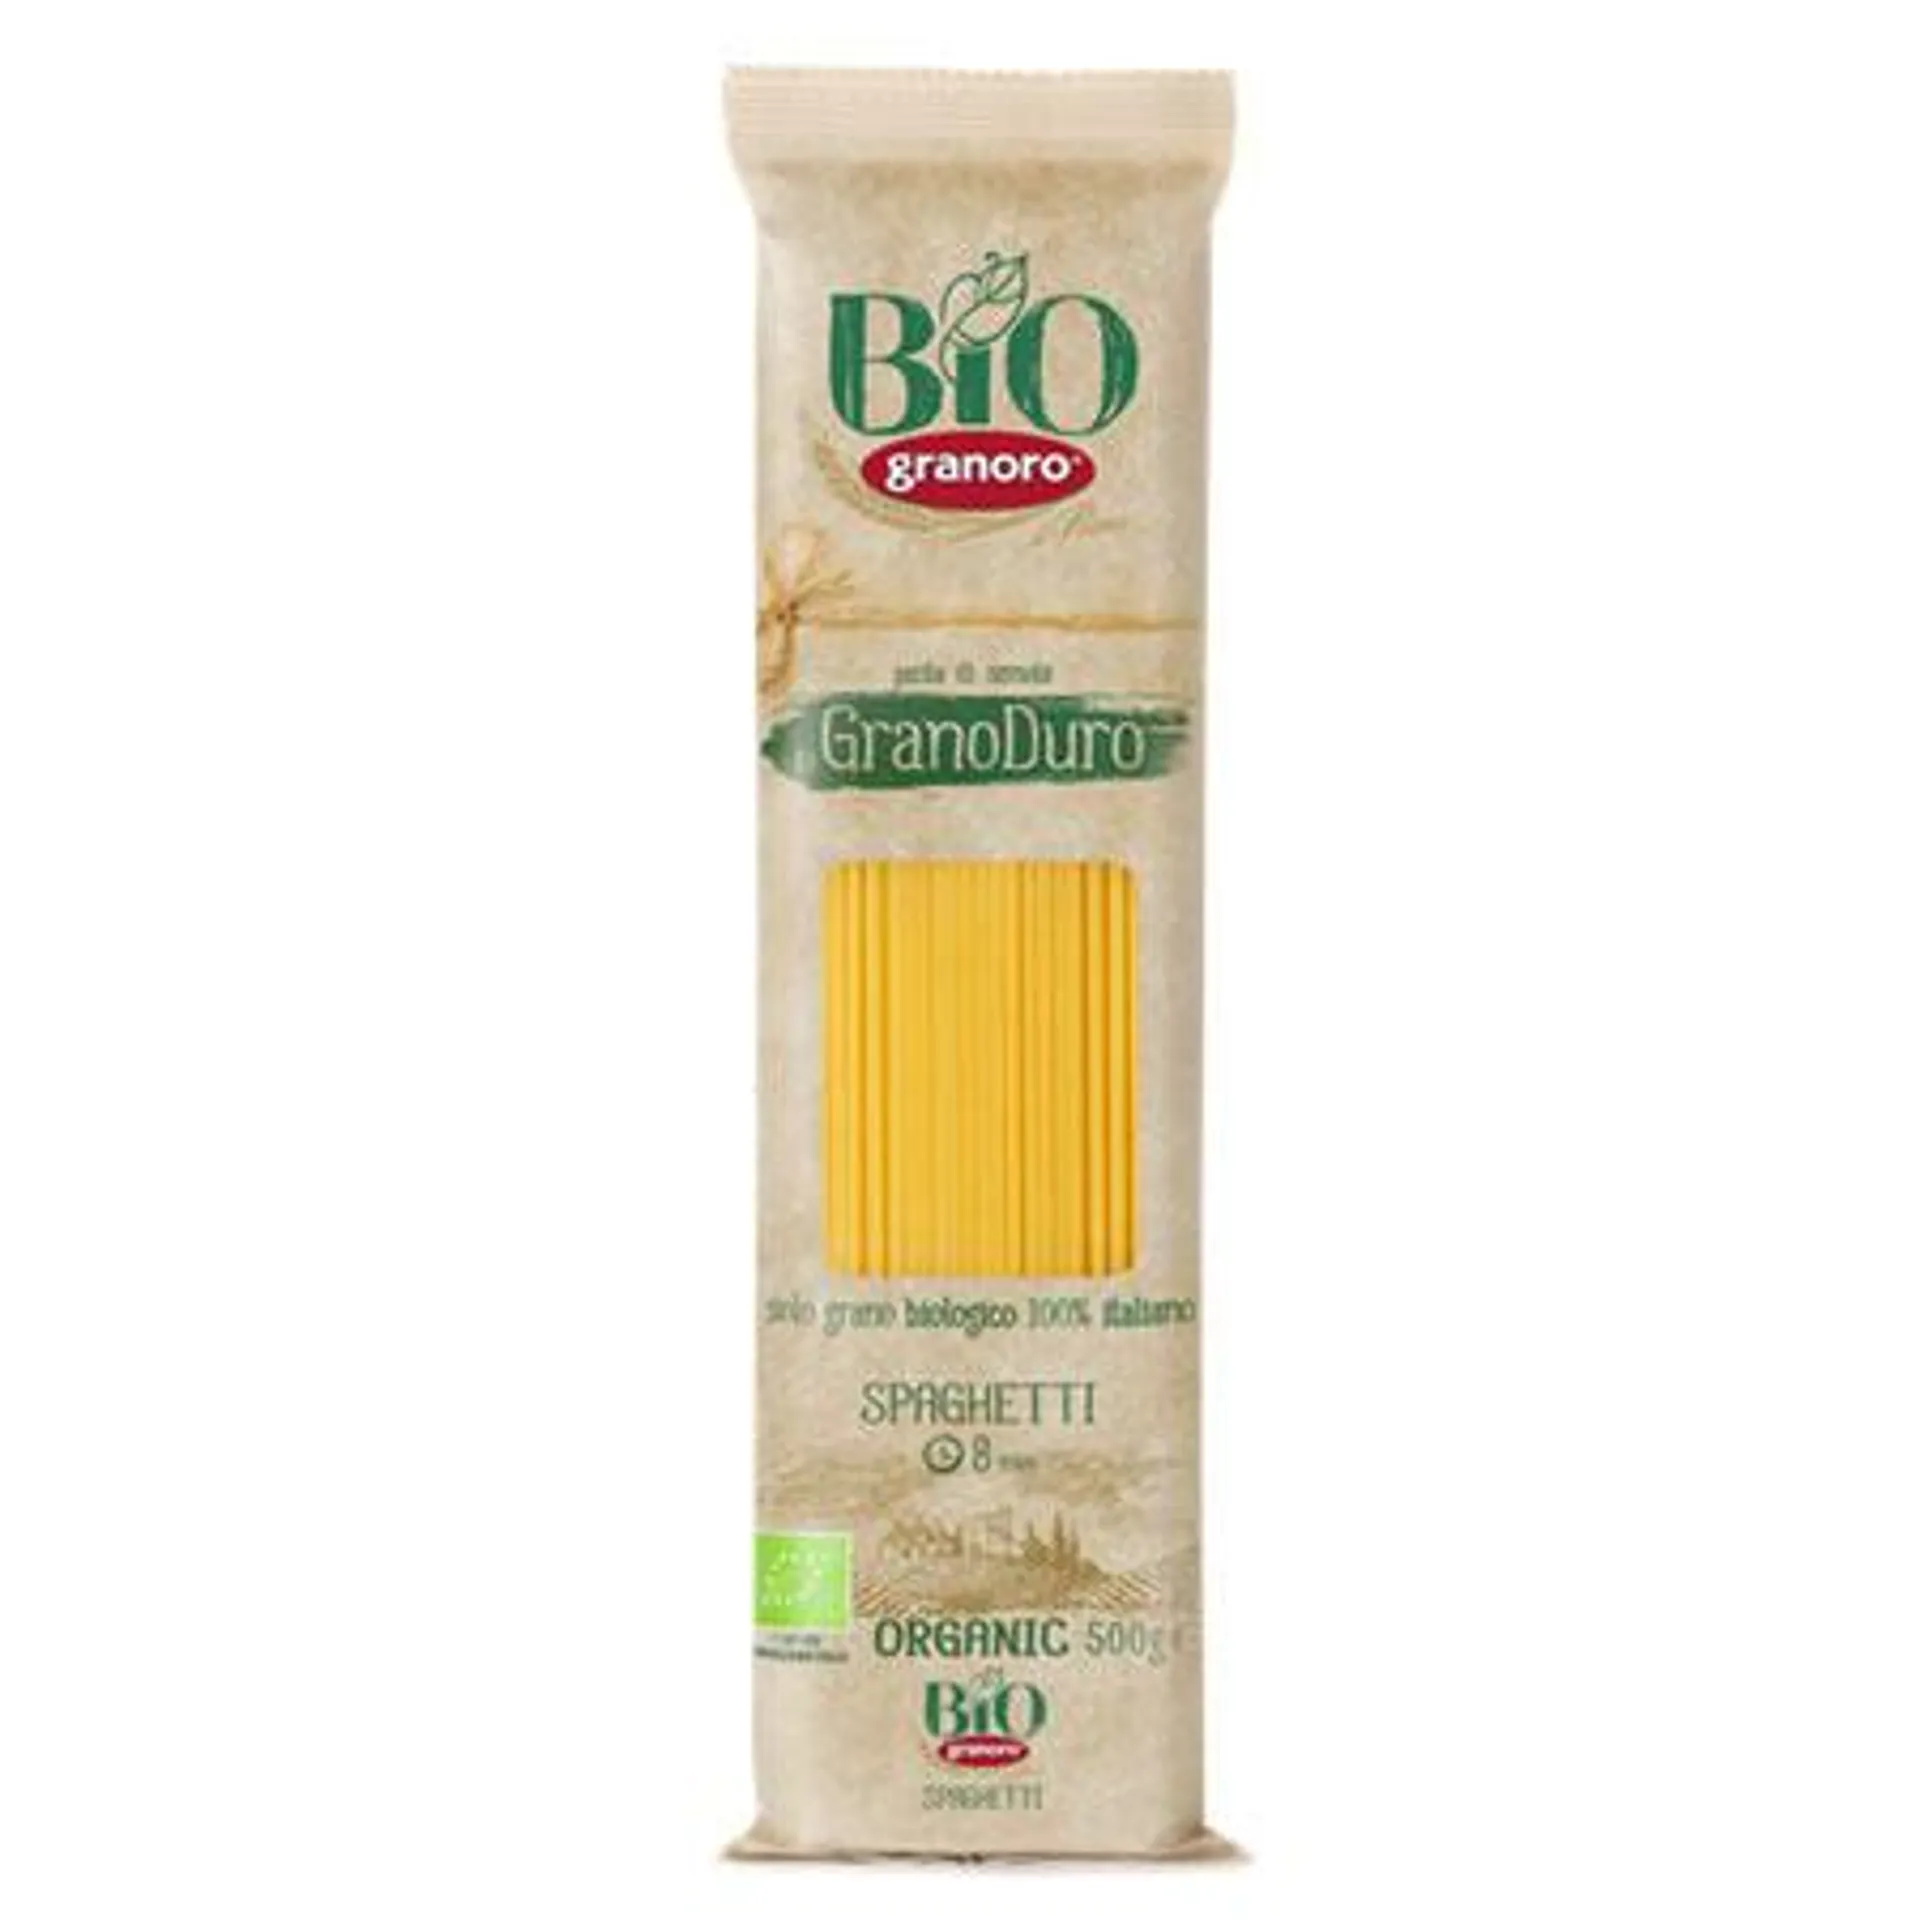 Bio granoro White Spaghetti